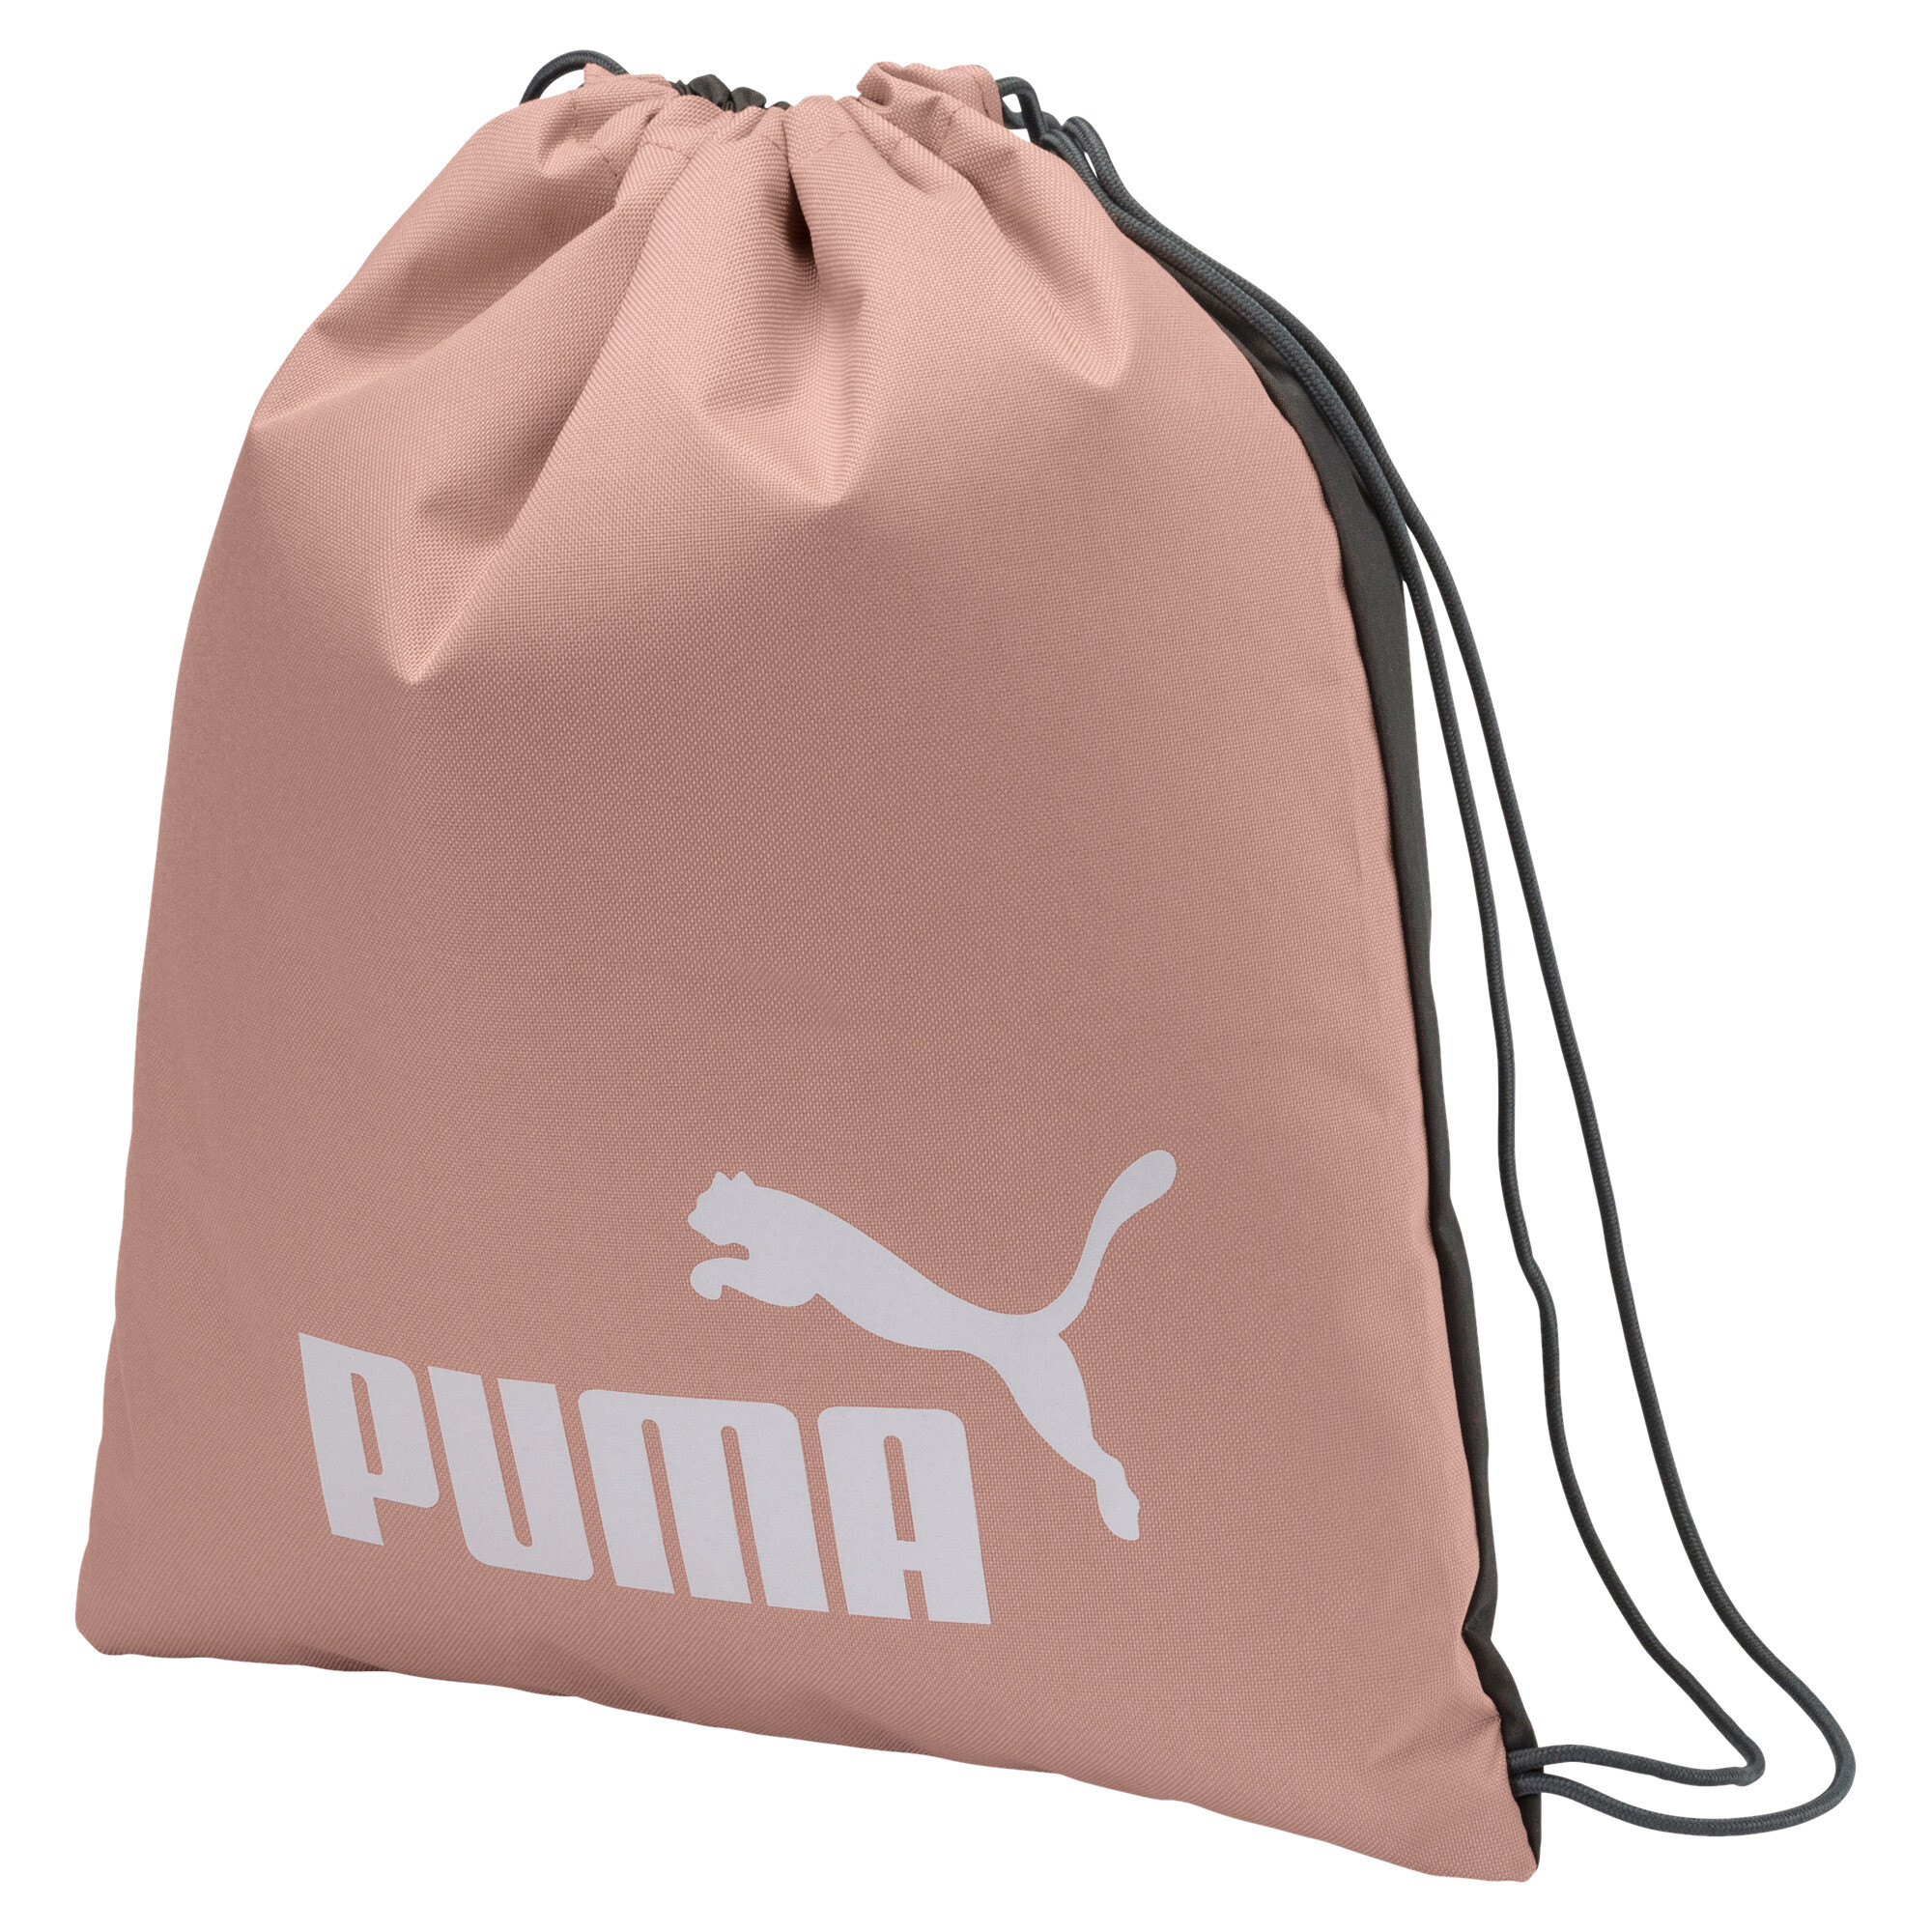 Men's Puma Phase Gym Bag, Beige, Accessories